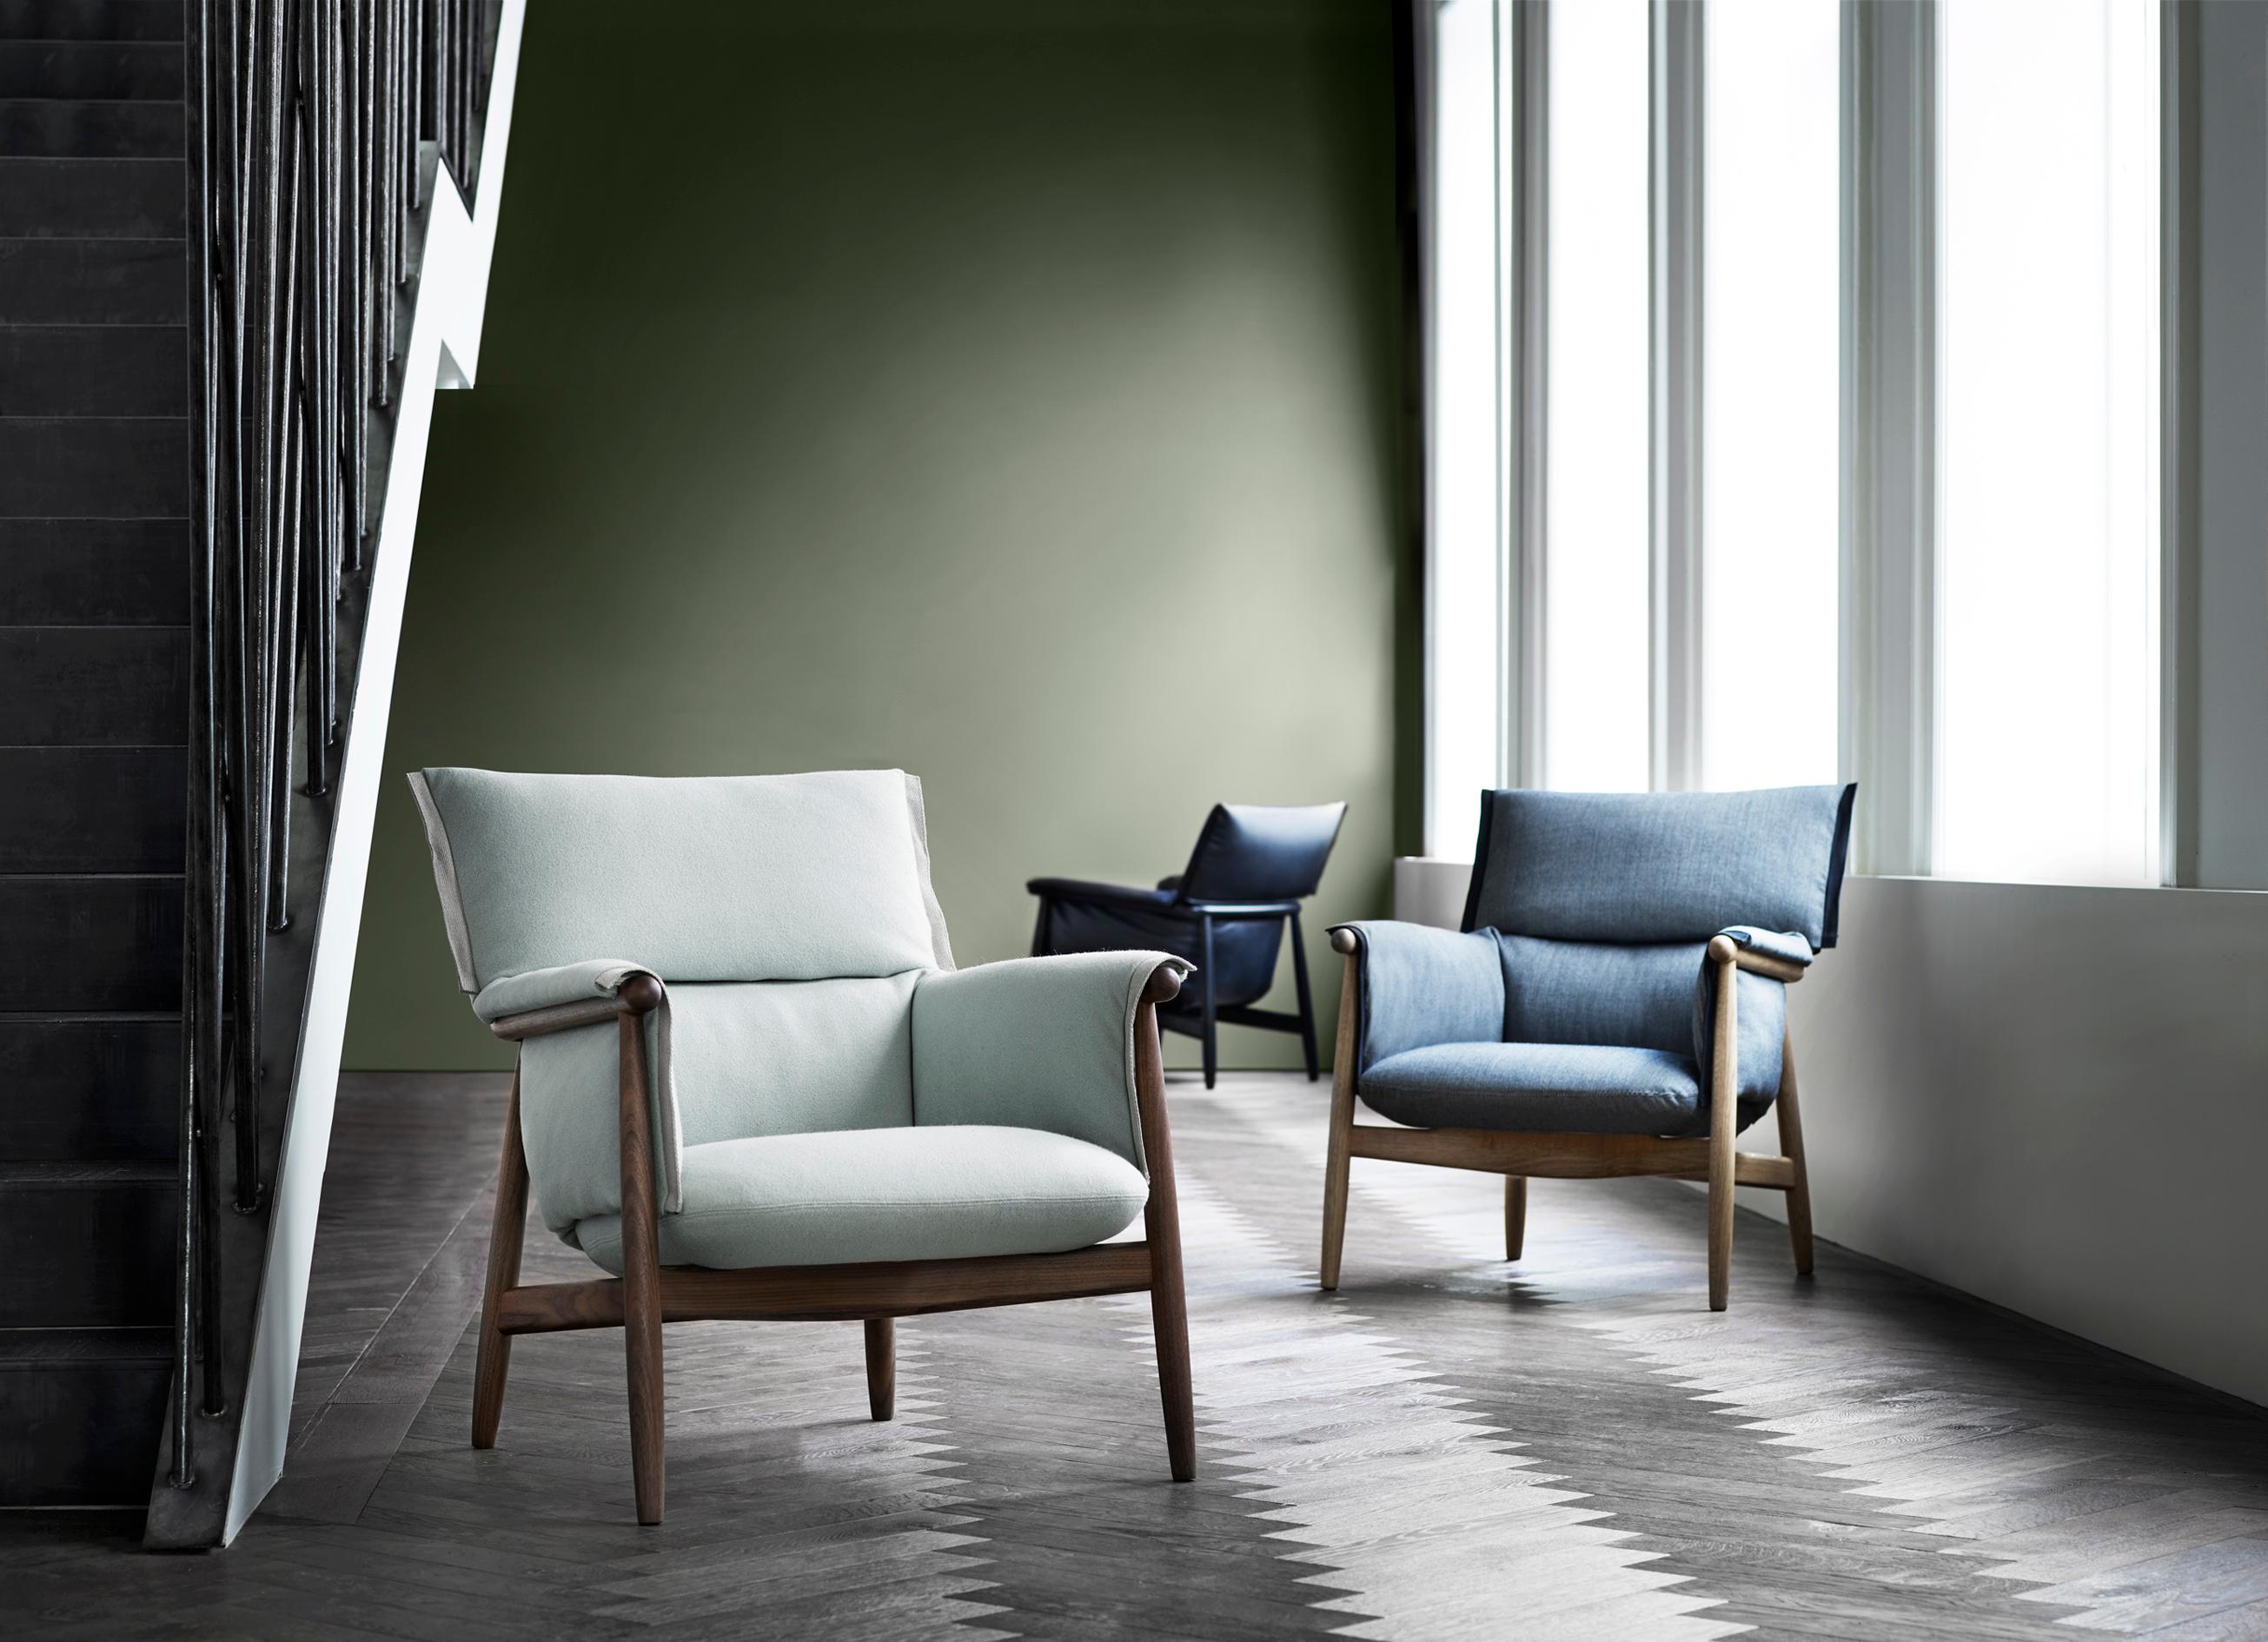 EOOS hat den E015 Embrace Lounge Sessel entwickelt, um höchsten Komfort zu bieten. Der Stuhl besteht aus einer durchgehend sichtbaren Holzstruktur mit einer dreiteiligen, abgerundeten Rückenlehne und charakteristischen Beinen, die den Gesamtrahmen